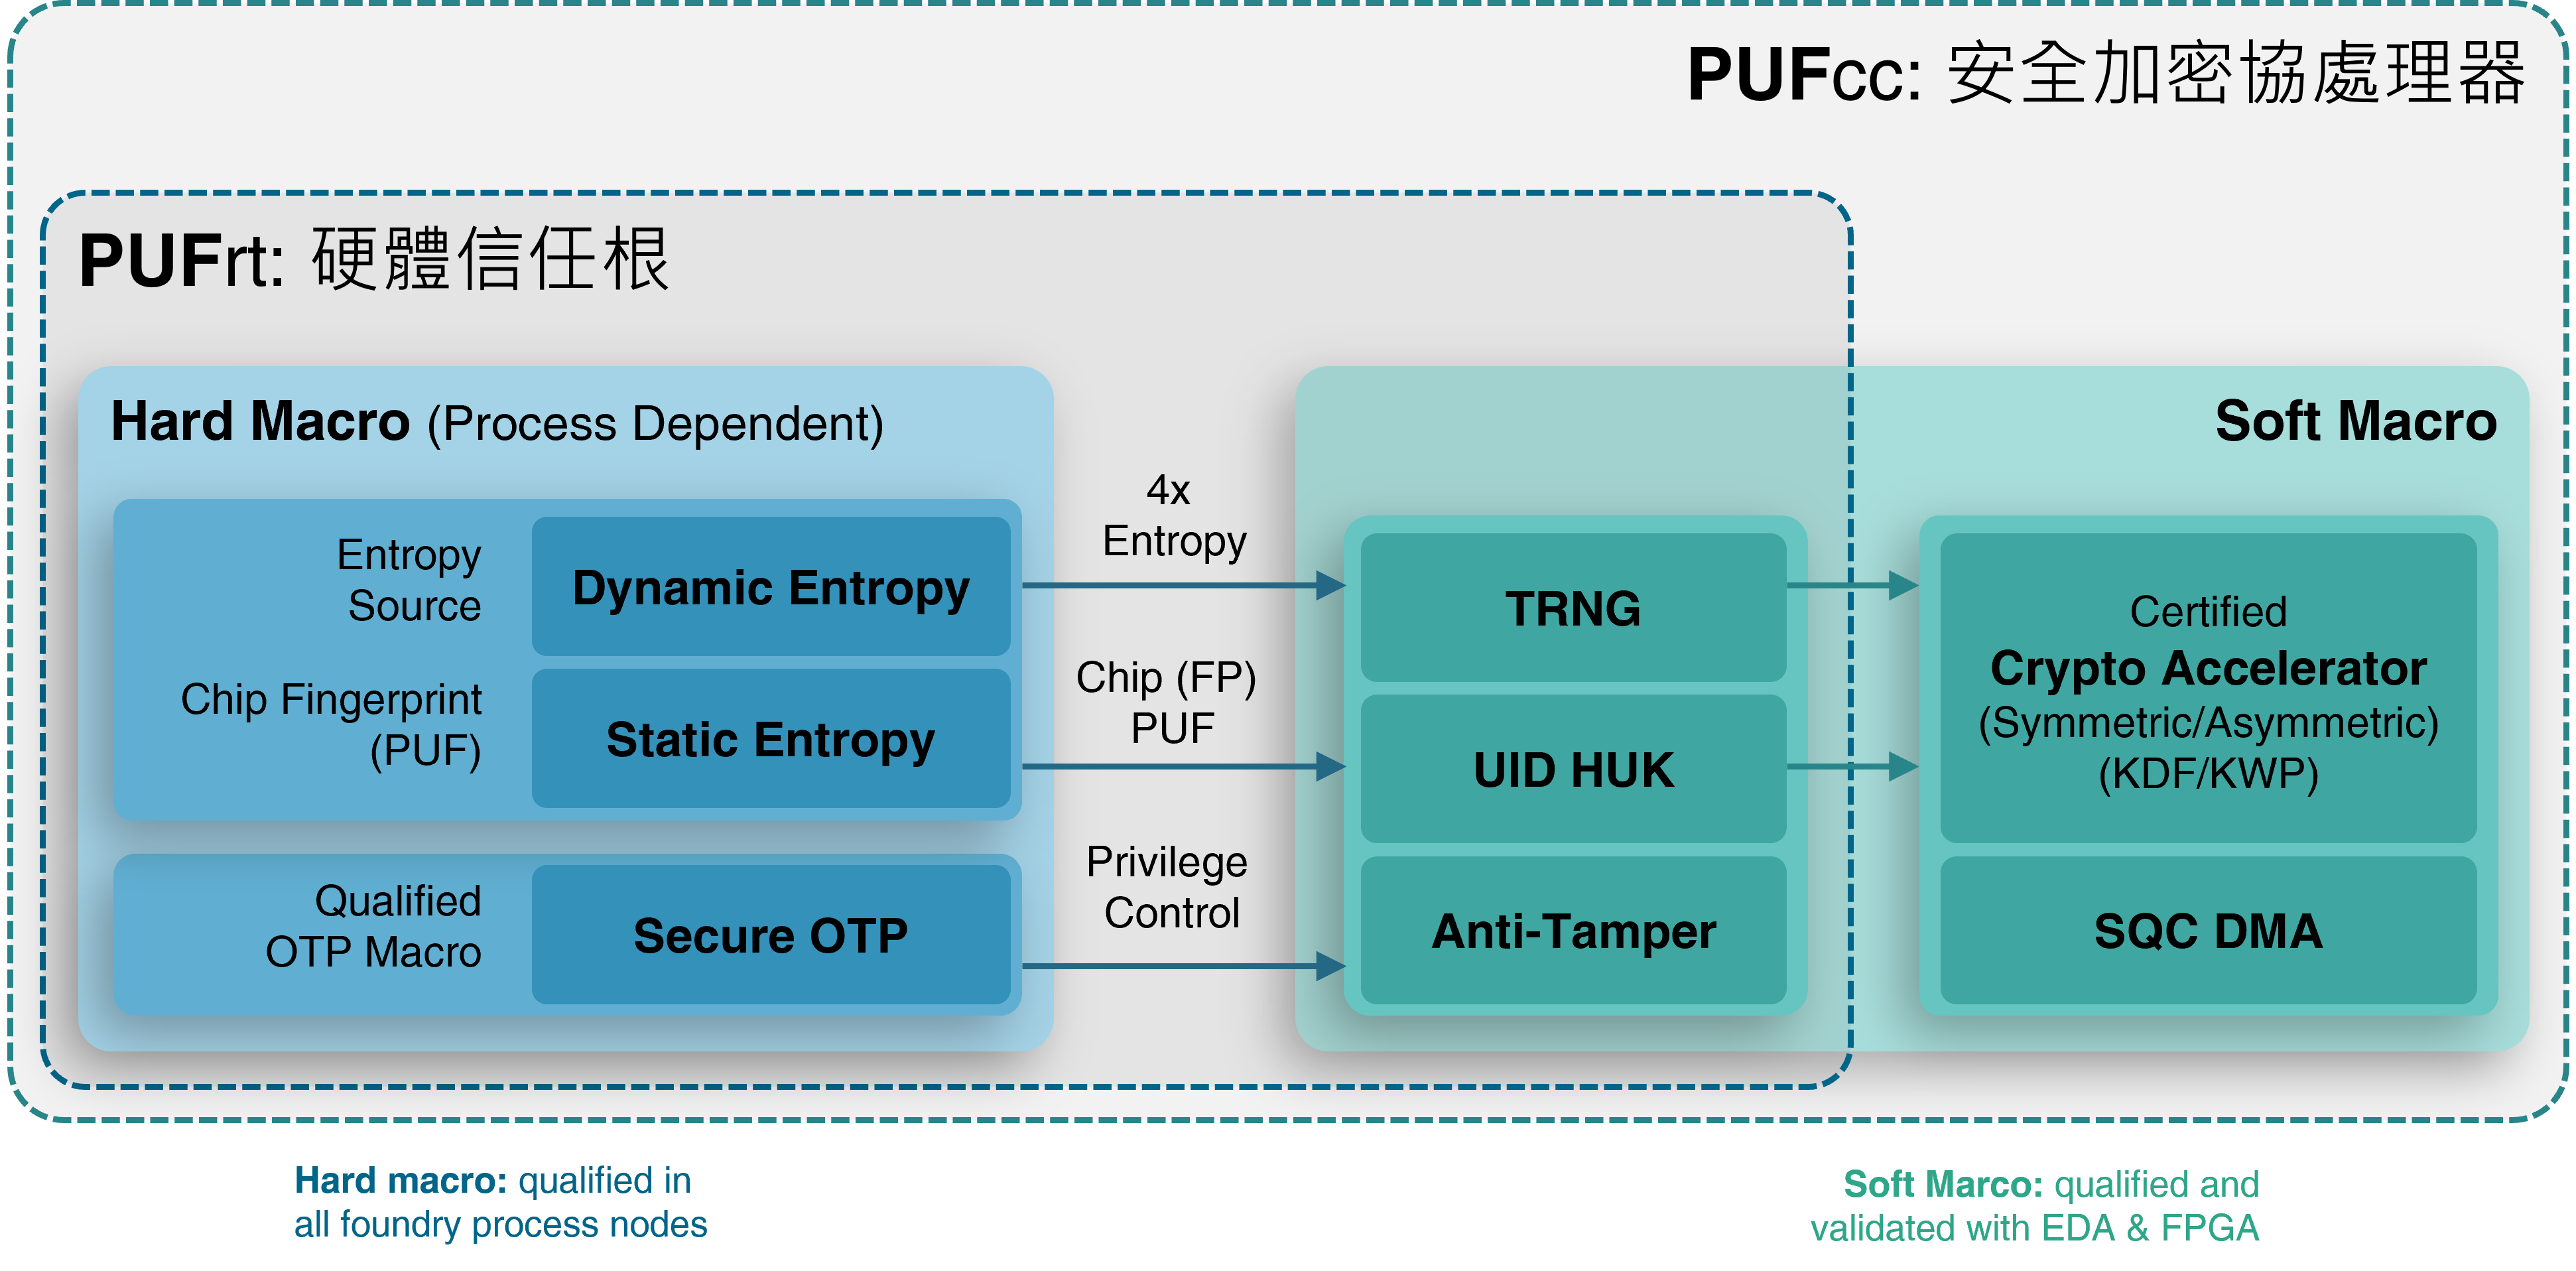 PUFcc crypto coprocessor